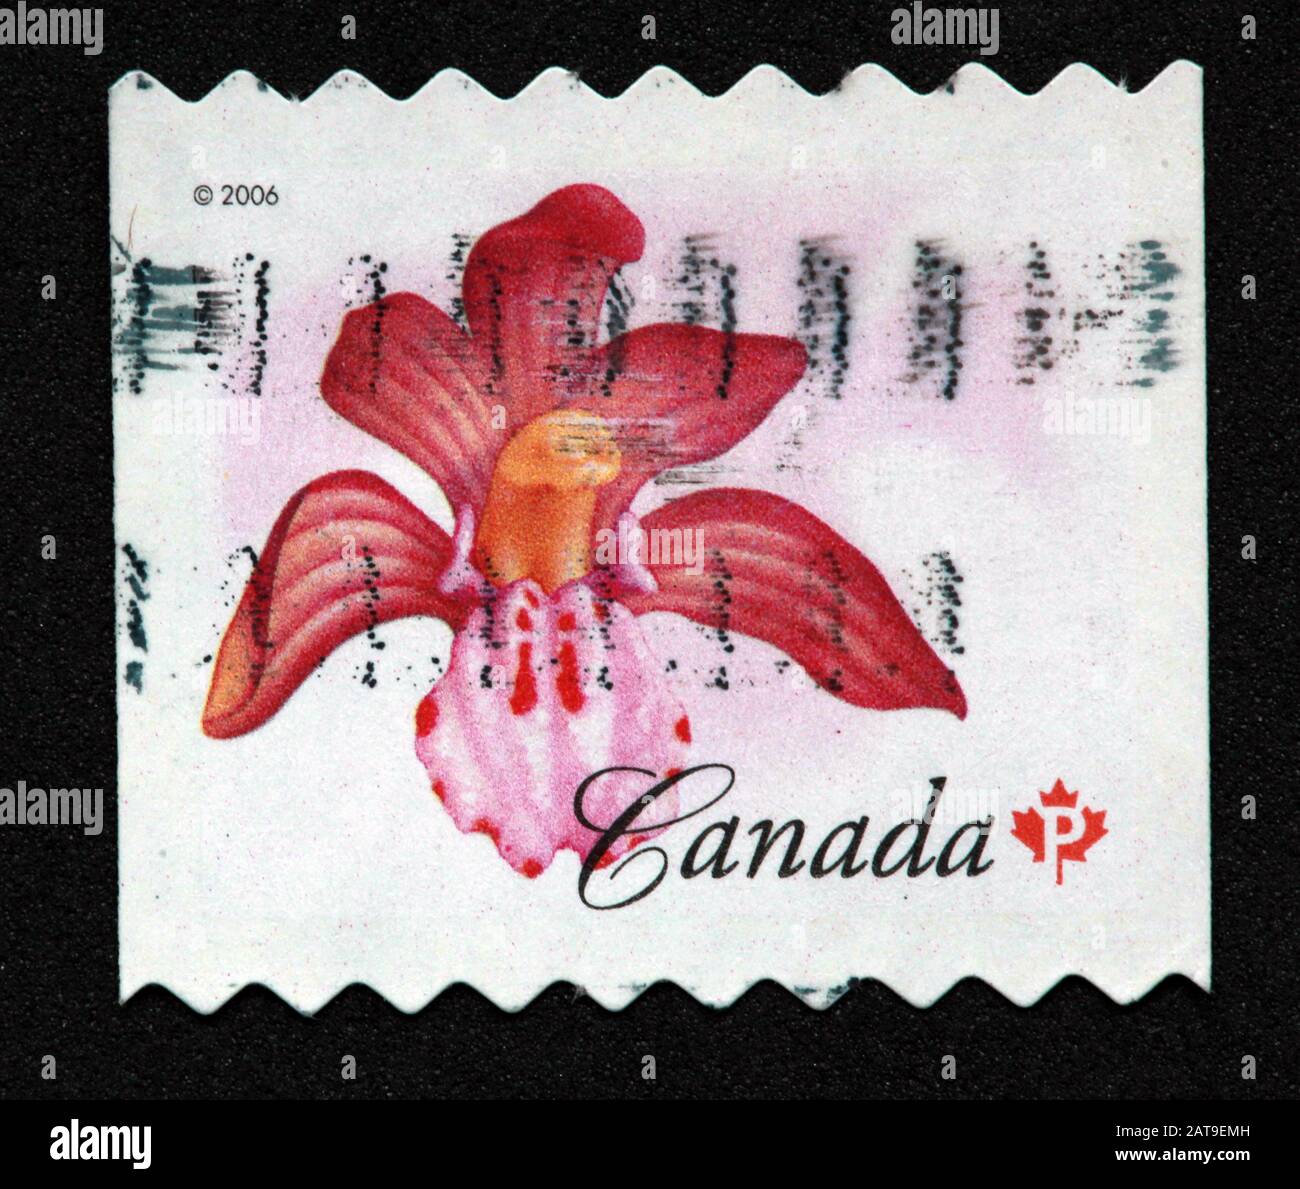 Timbre canadien, Timbre Canada, postes Canada, timbre utilisé, Canada, 2006, fleur, fleur rouge, coralroot repéré, Corallorhiza maculata Banque D'Images